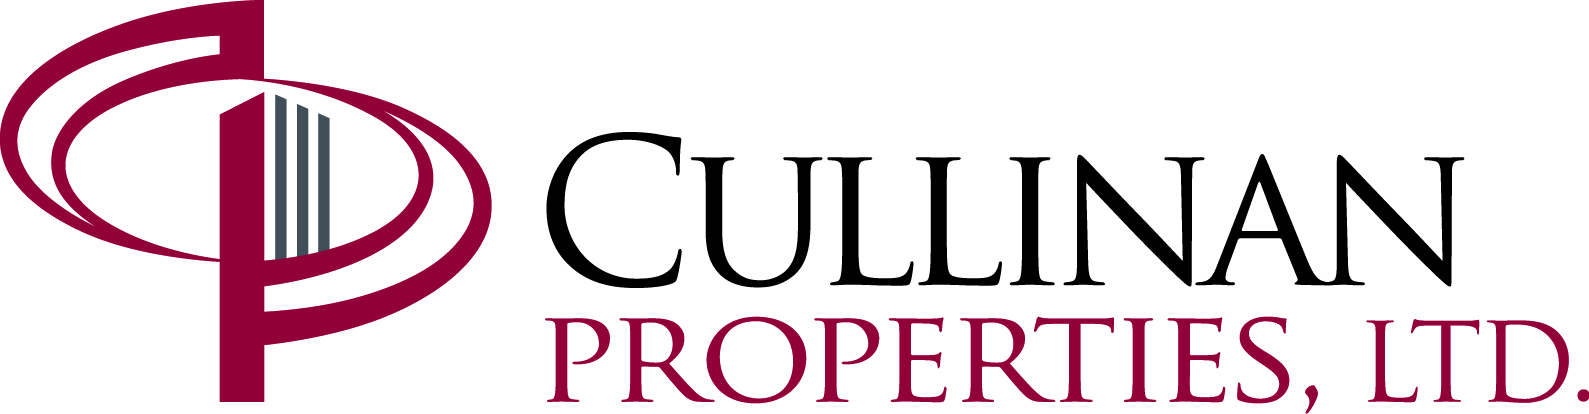 Cullinan Properties